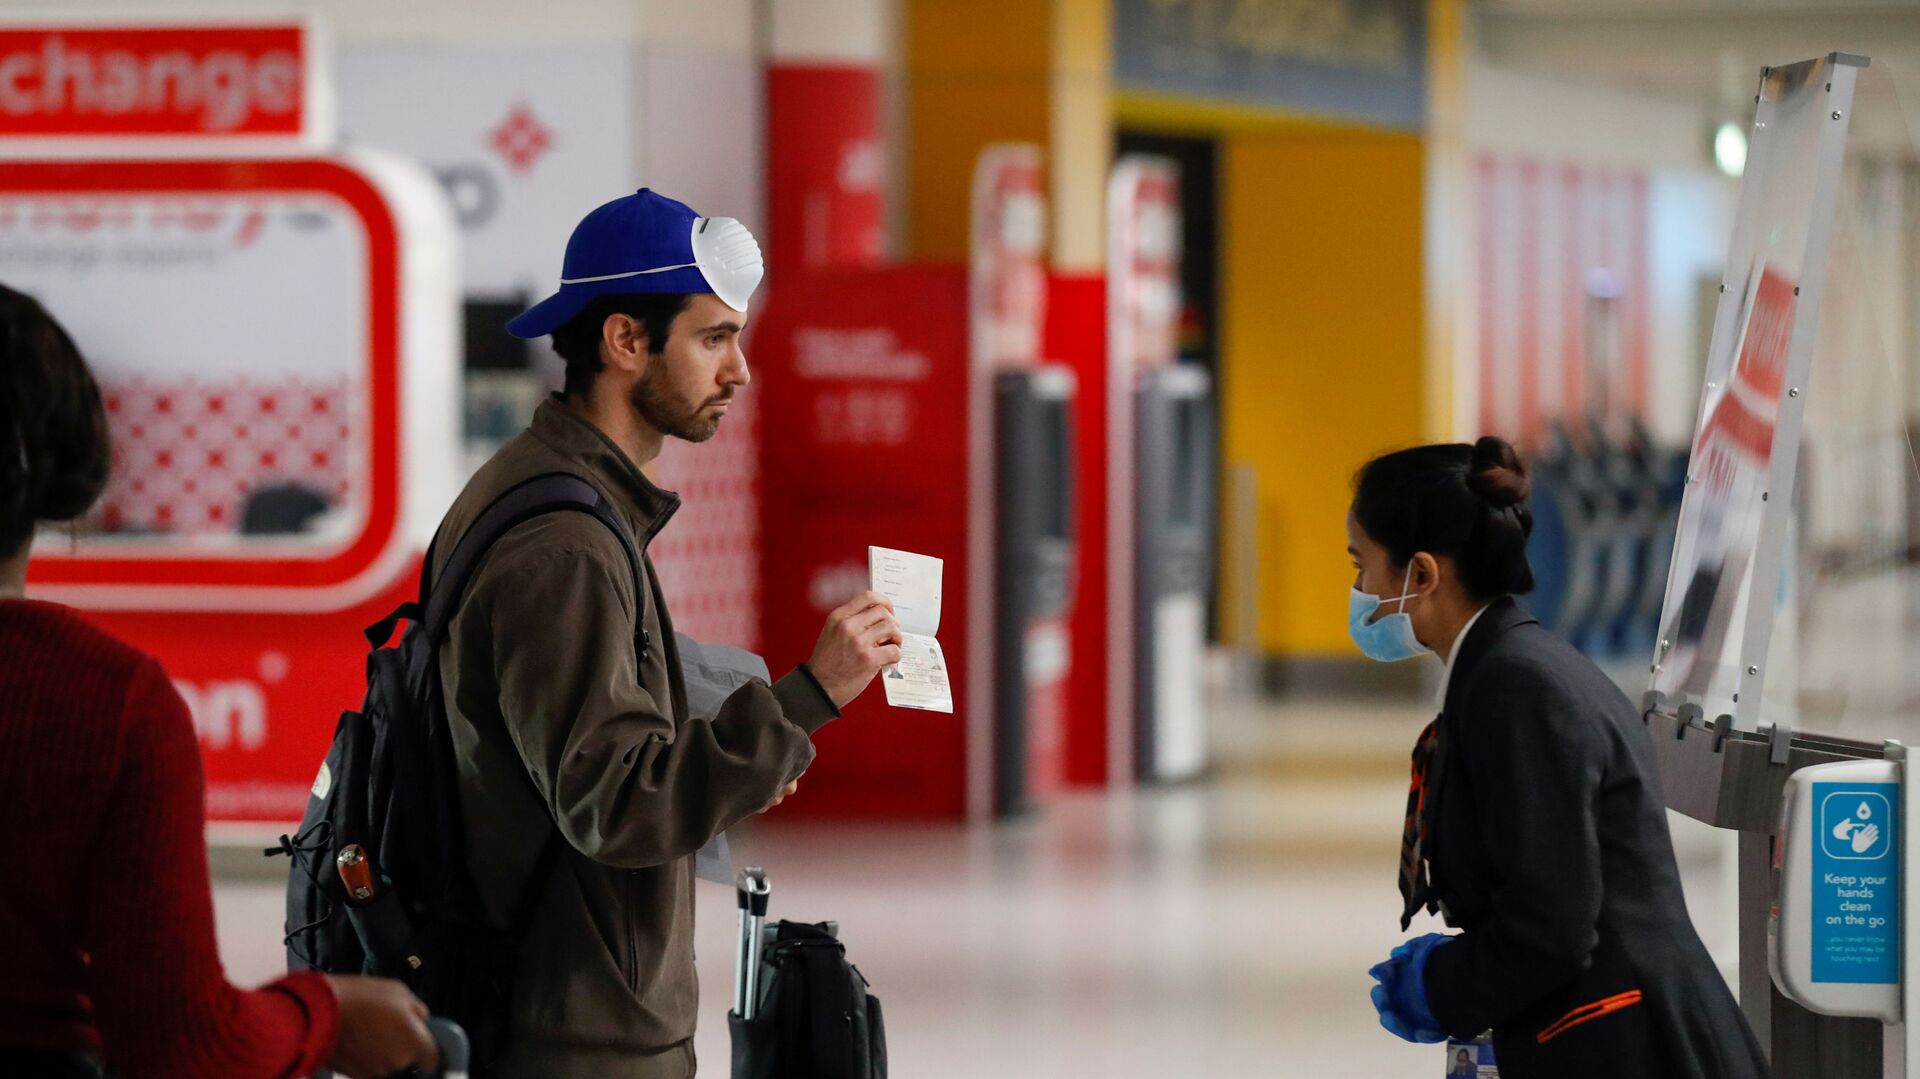 Пассажир предъявляет свой паспорт сотруднику в аэропорту Гатвик, Великобритания - Sputnik Таджикистан, 1920, 03.01.2022